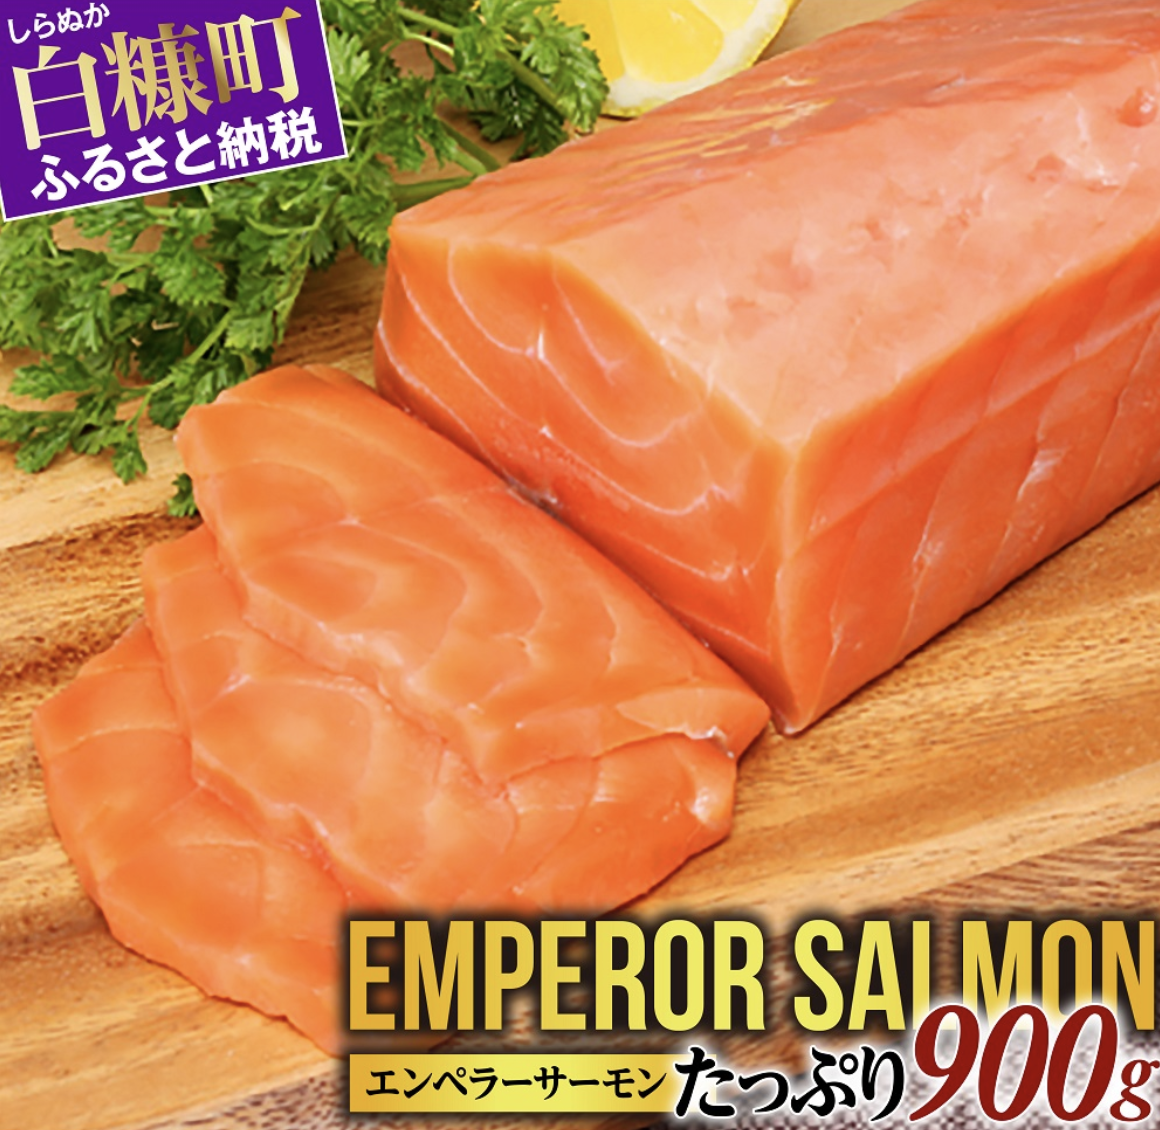 東和食品 北海道 エンペラーサーモン 1kg